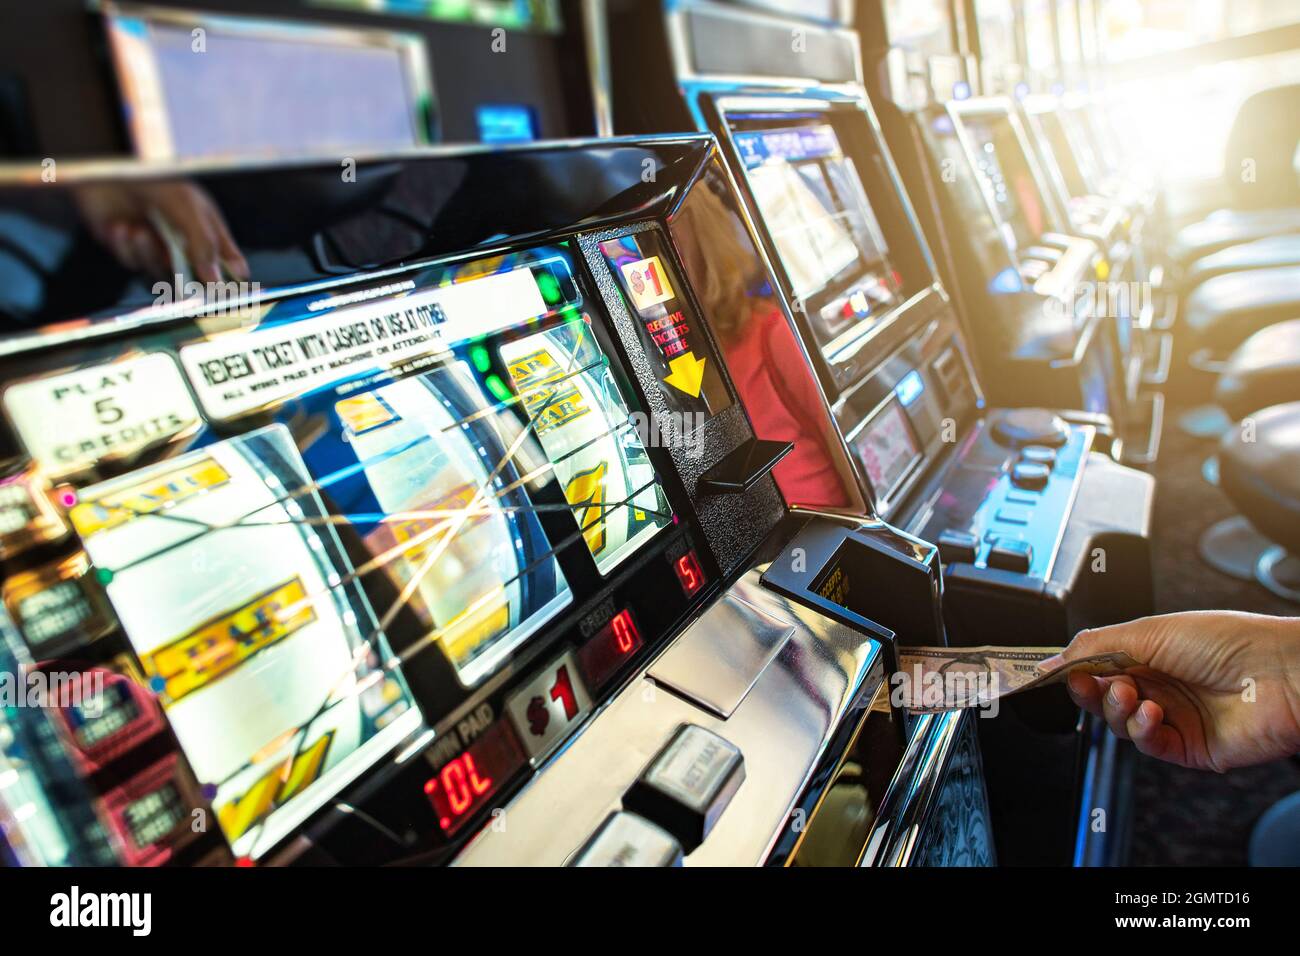 Las Vegas machine à sous Caucasian Player Insertion Banknote pour un autre jeu Bandit une main. Thème de l'industrie du jeu. Banque D'Images